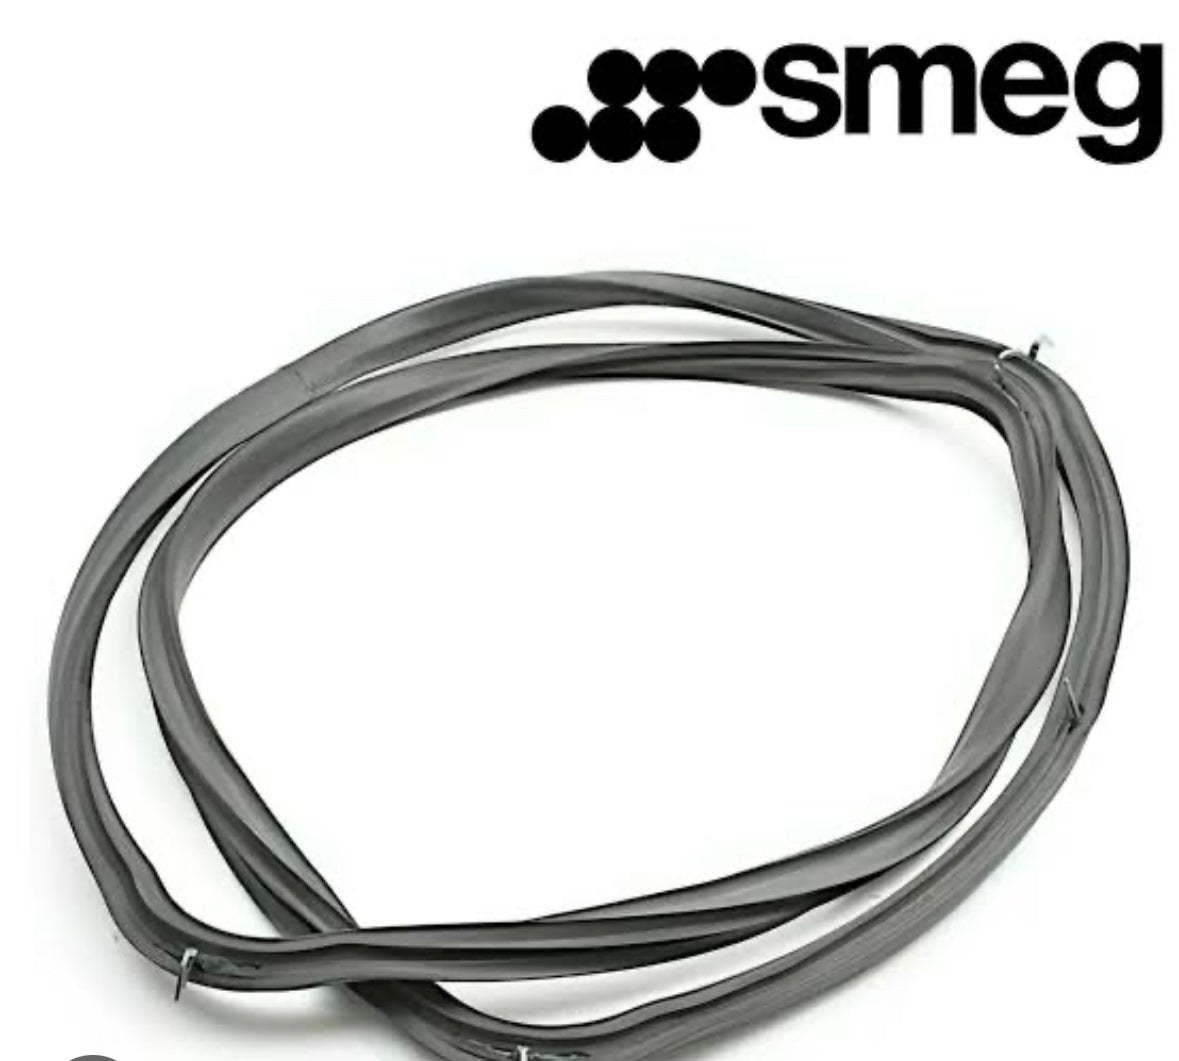 Smeg 754131050 900Mm Oven Door Gasket/Seal-4 Sides